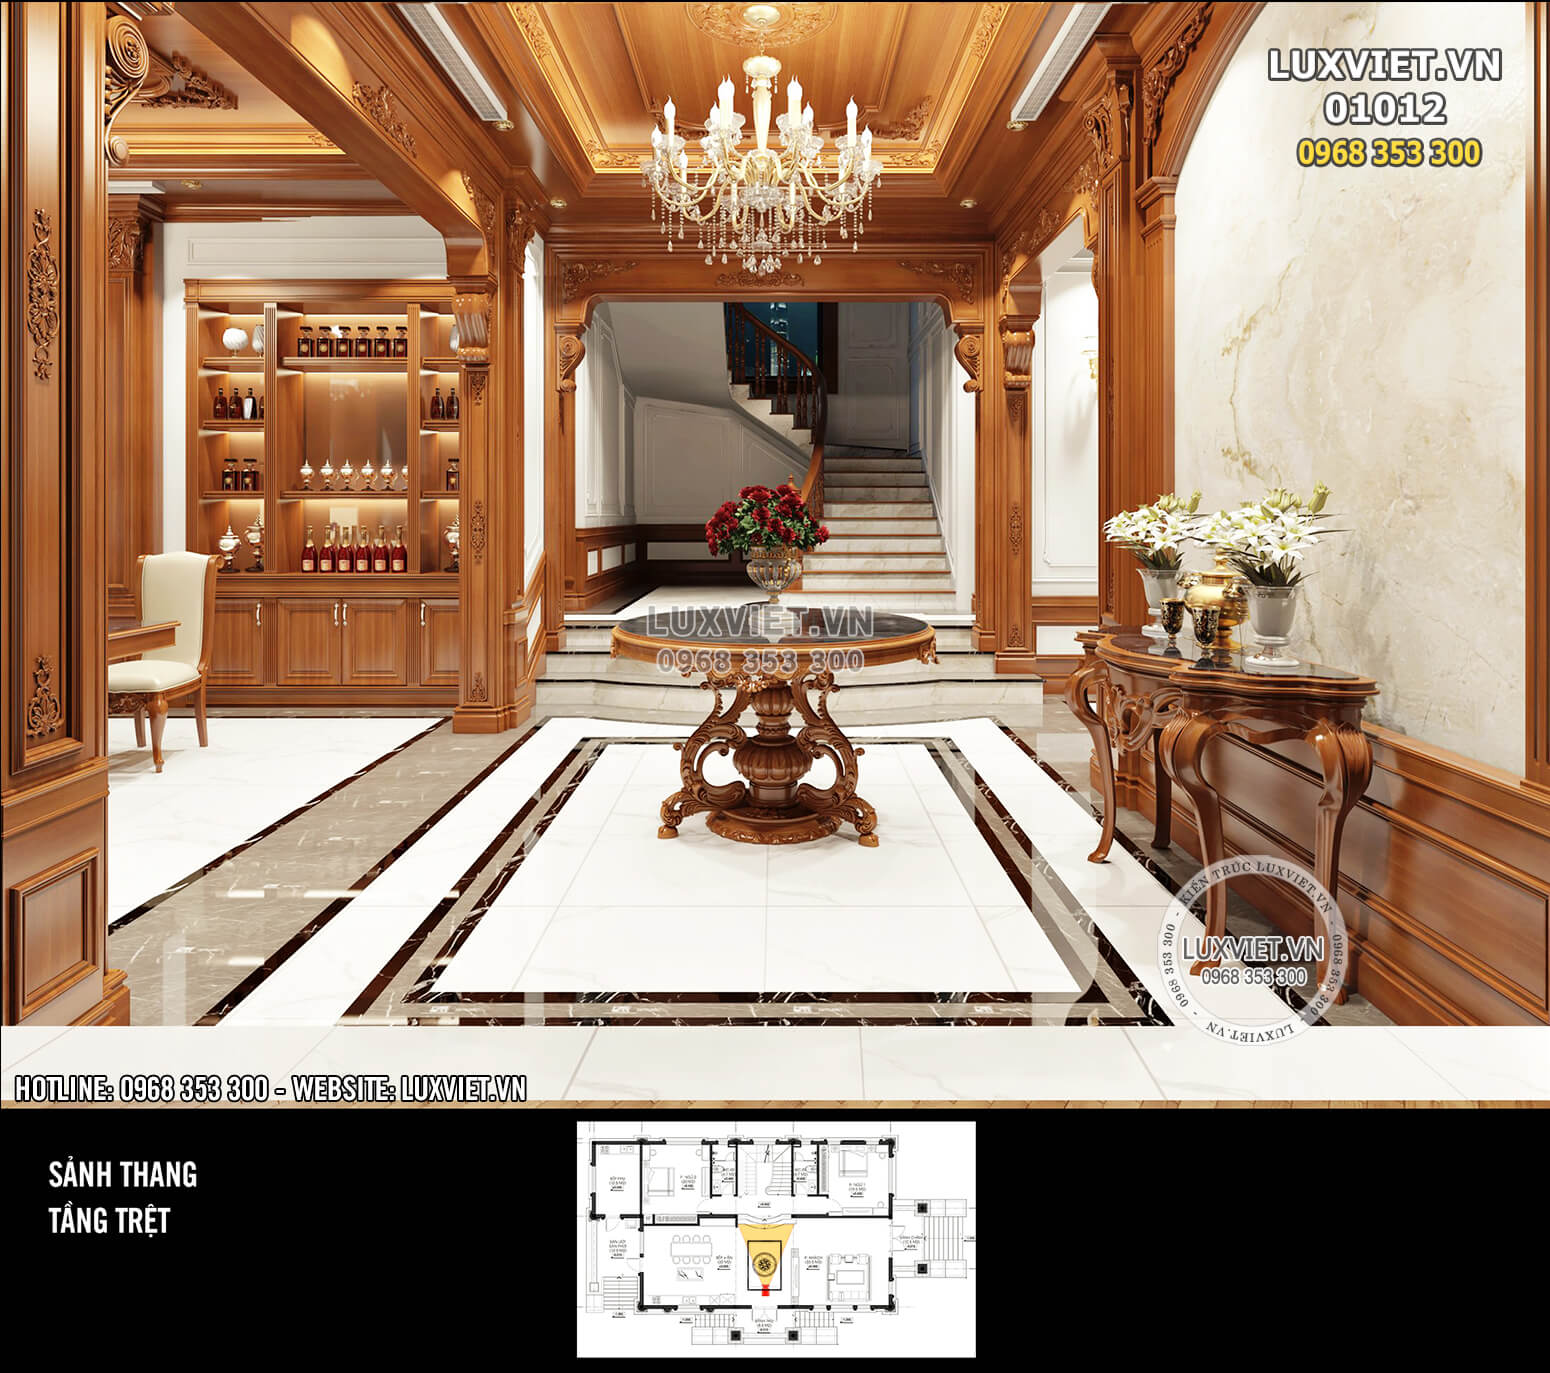 Hình ảnh: Không gian sảnh phụ nơi tiếp giao giữa cầu thang và phòng bếp ăn - nội thất ốp gỗ tân cổ điển